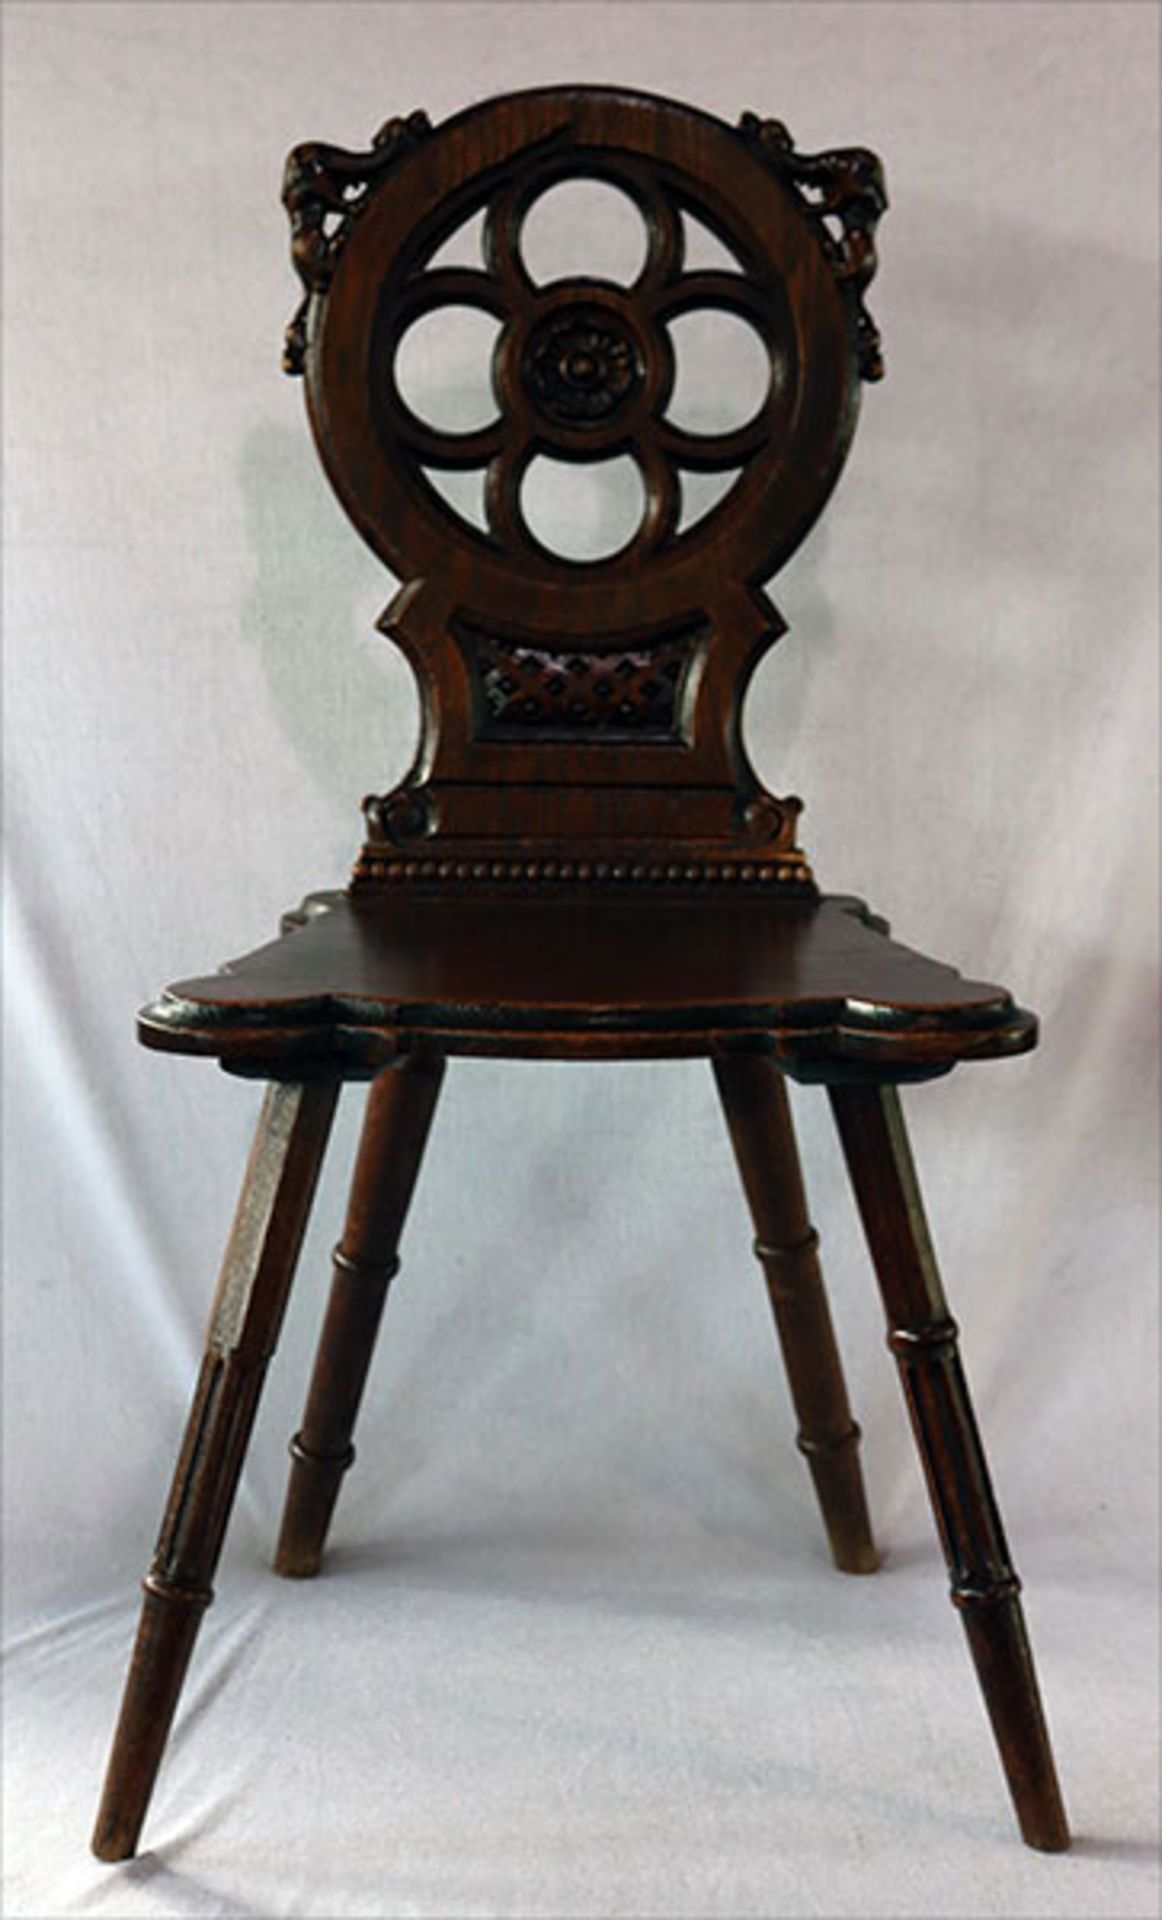 Brettstuhl mit beschnitzter Lehne, dunkel gebeizt, H 98 cm, B 48 cm, T 39 cm, Gebrauchsspuren